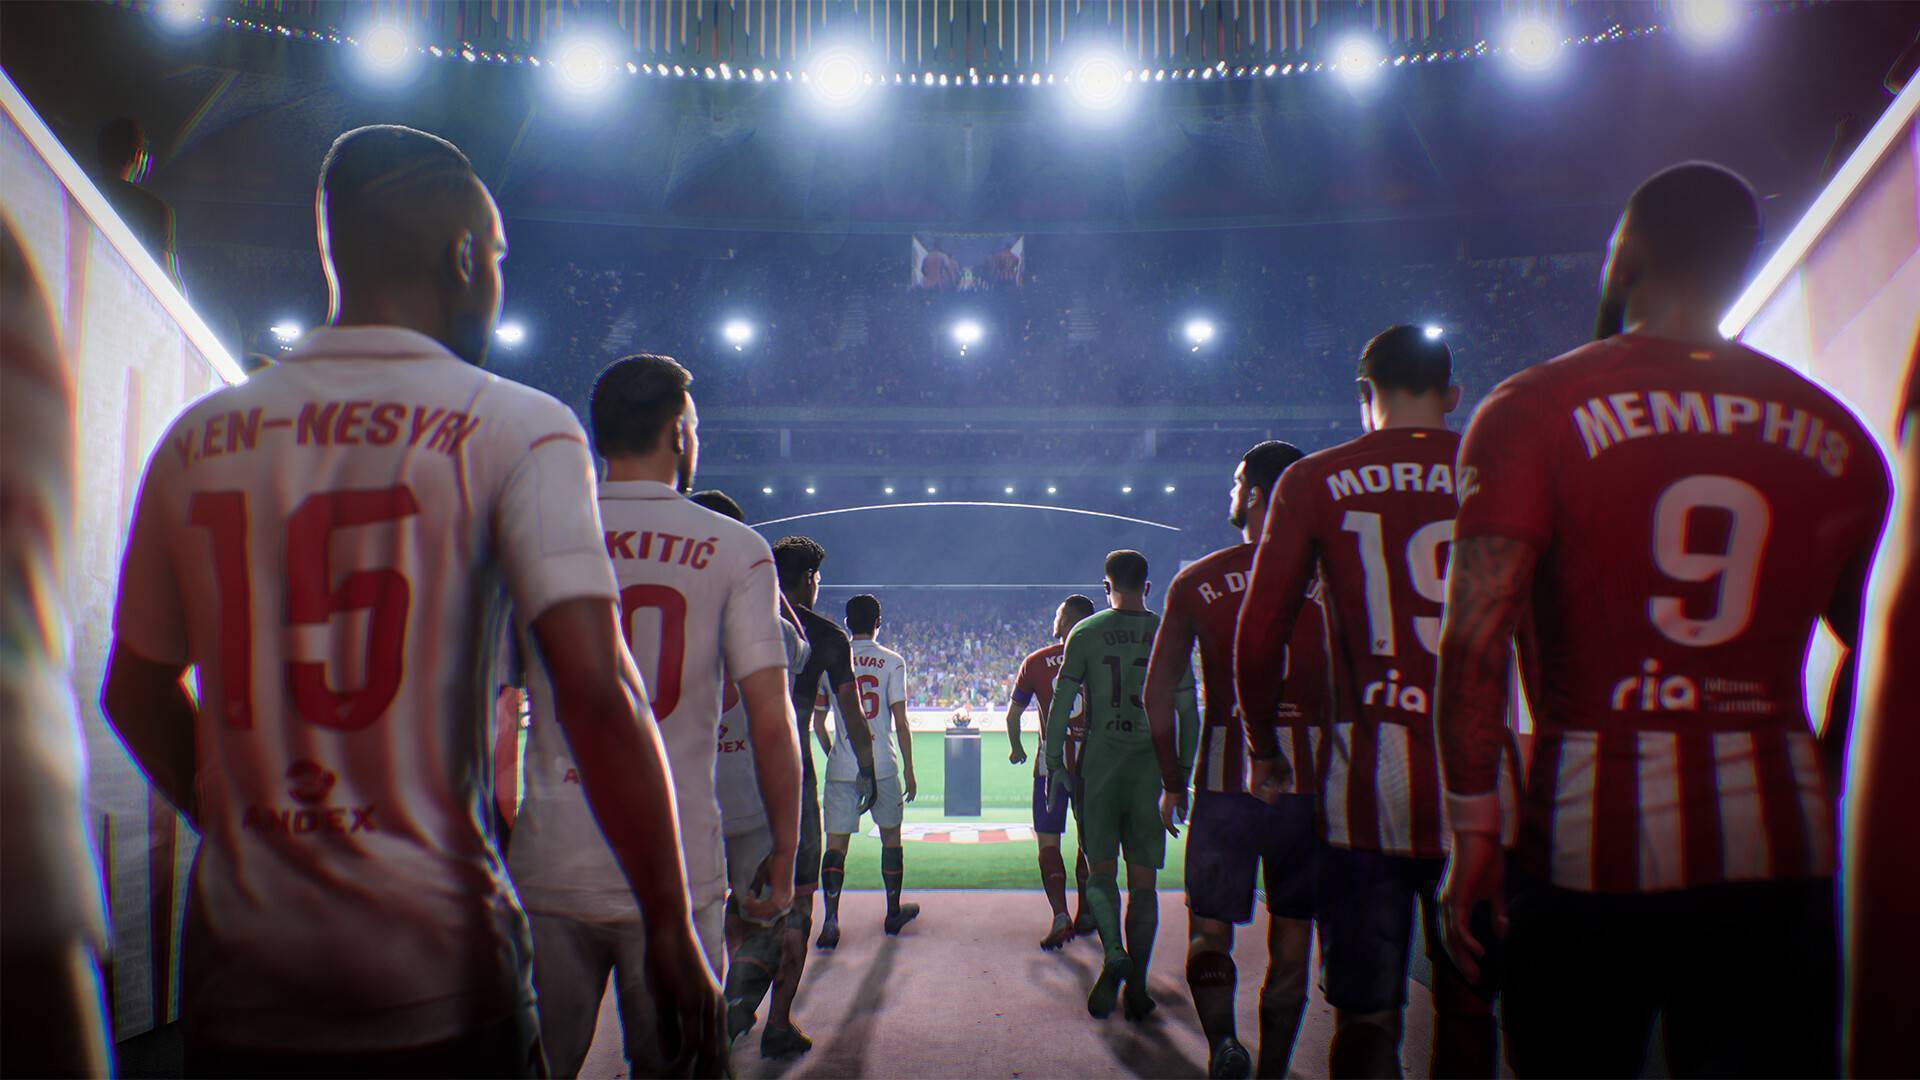 FIFA 22 (PC) Key preço mais barato: 22,84€ para Origin